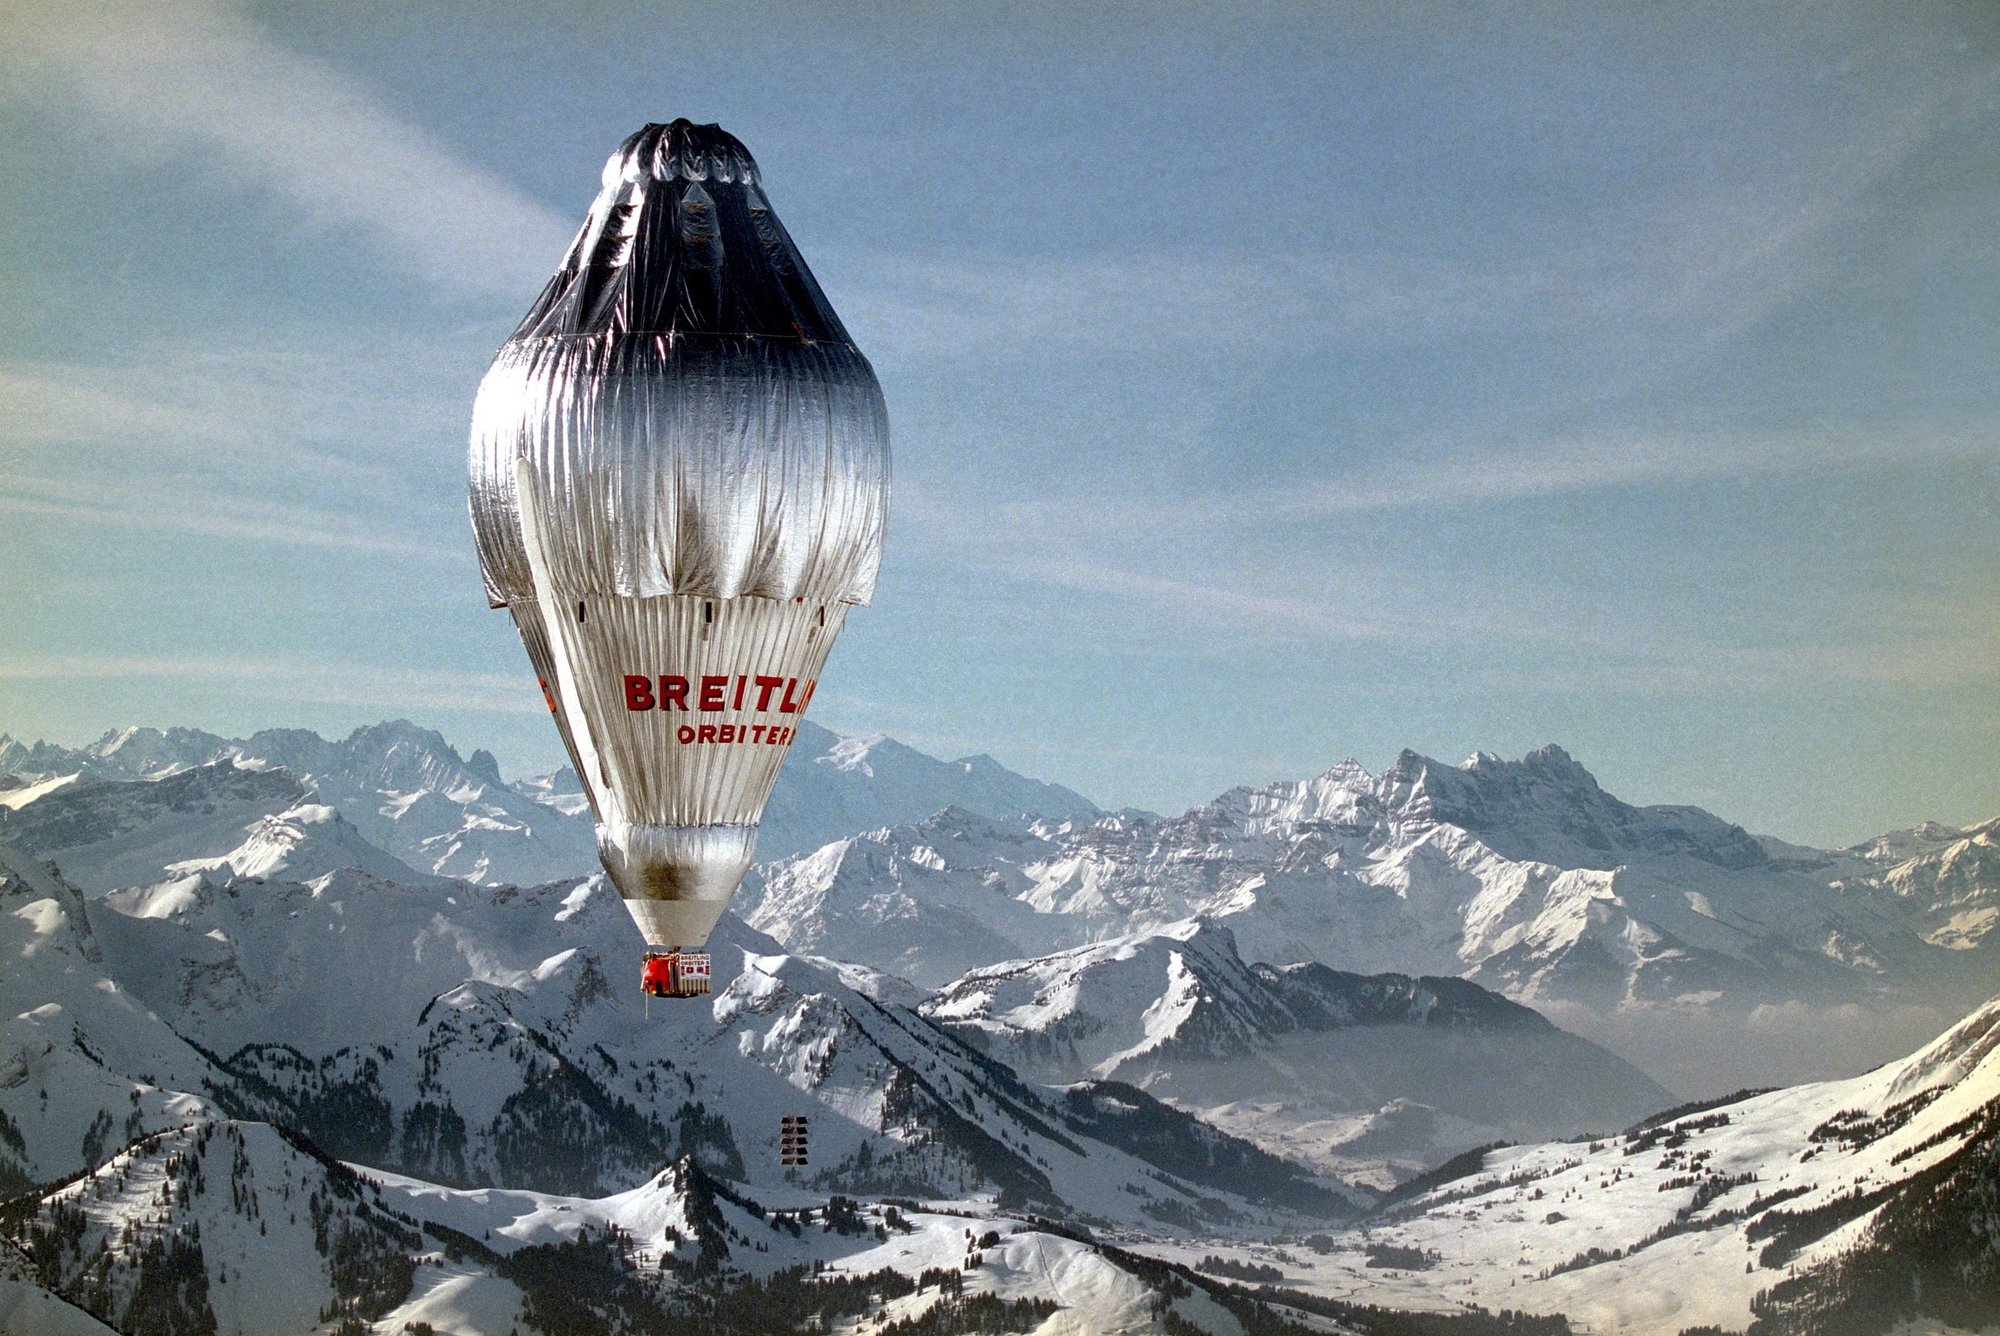 Breitling Orbiter 3, le ballon de Brian Jones et Bertrand Piccard, survole les Alpes après son départ de Château-d’Oex le 1er mars 1999.